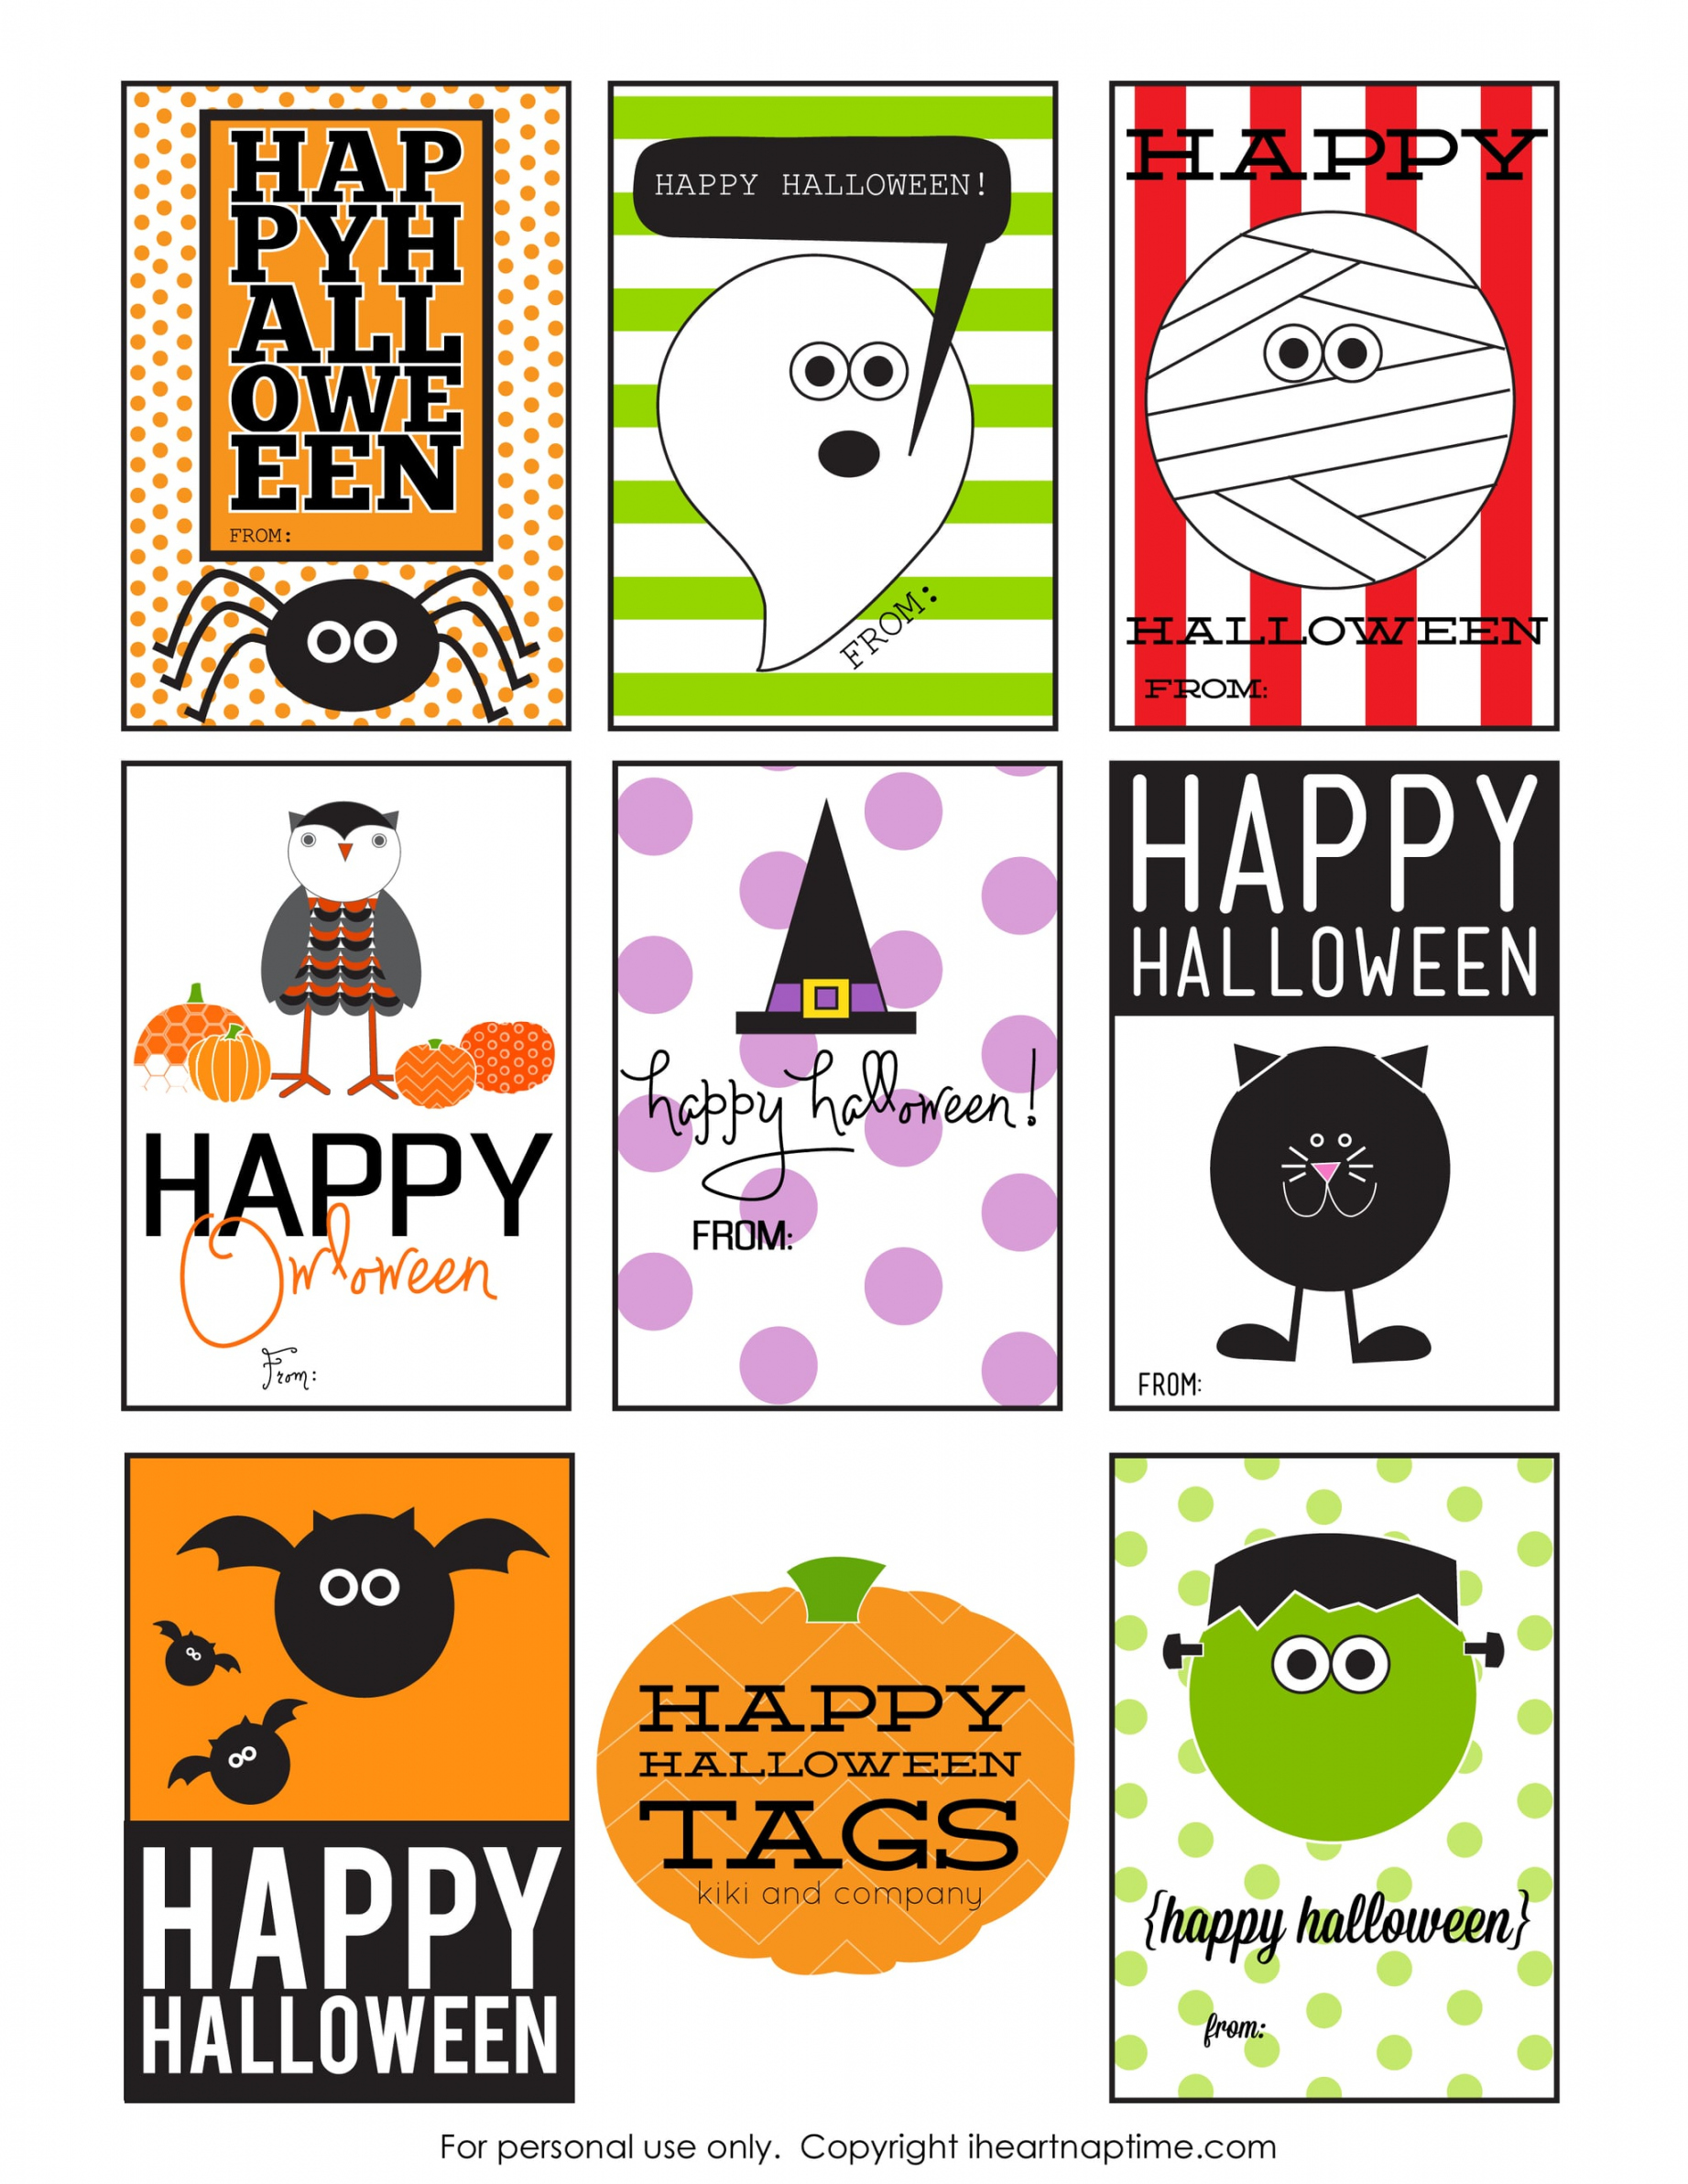 Free Printable Halloween Gift Tags  POPSUGAR Smart Living - FREE Printables - Free Printable Halloween Gift Tags Printable